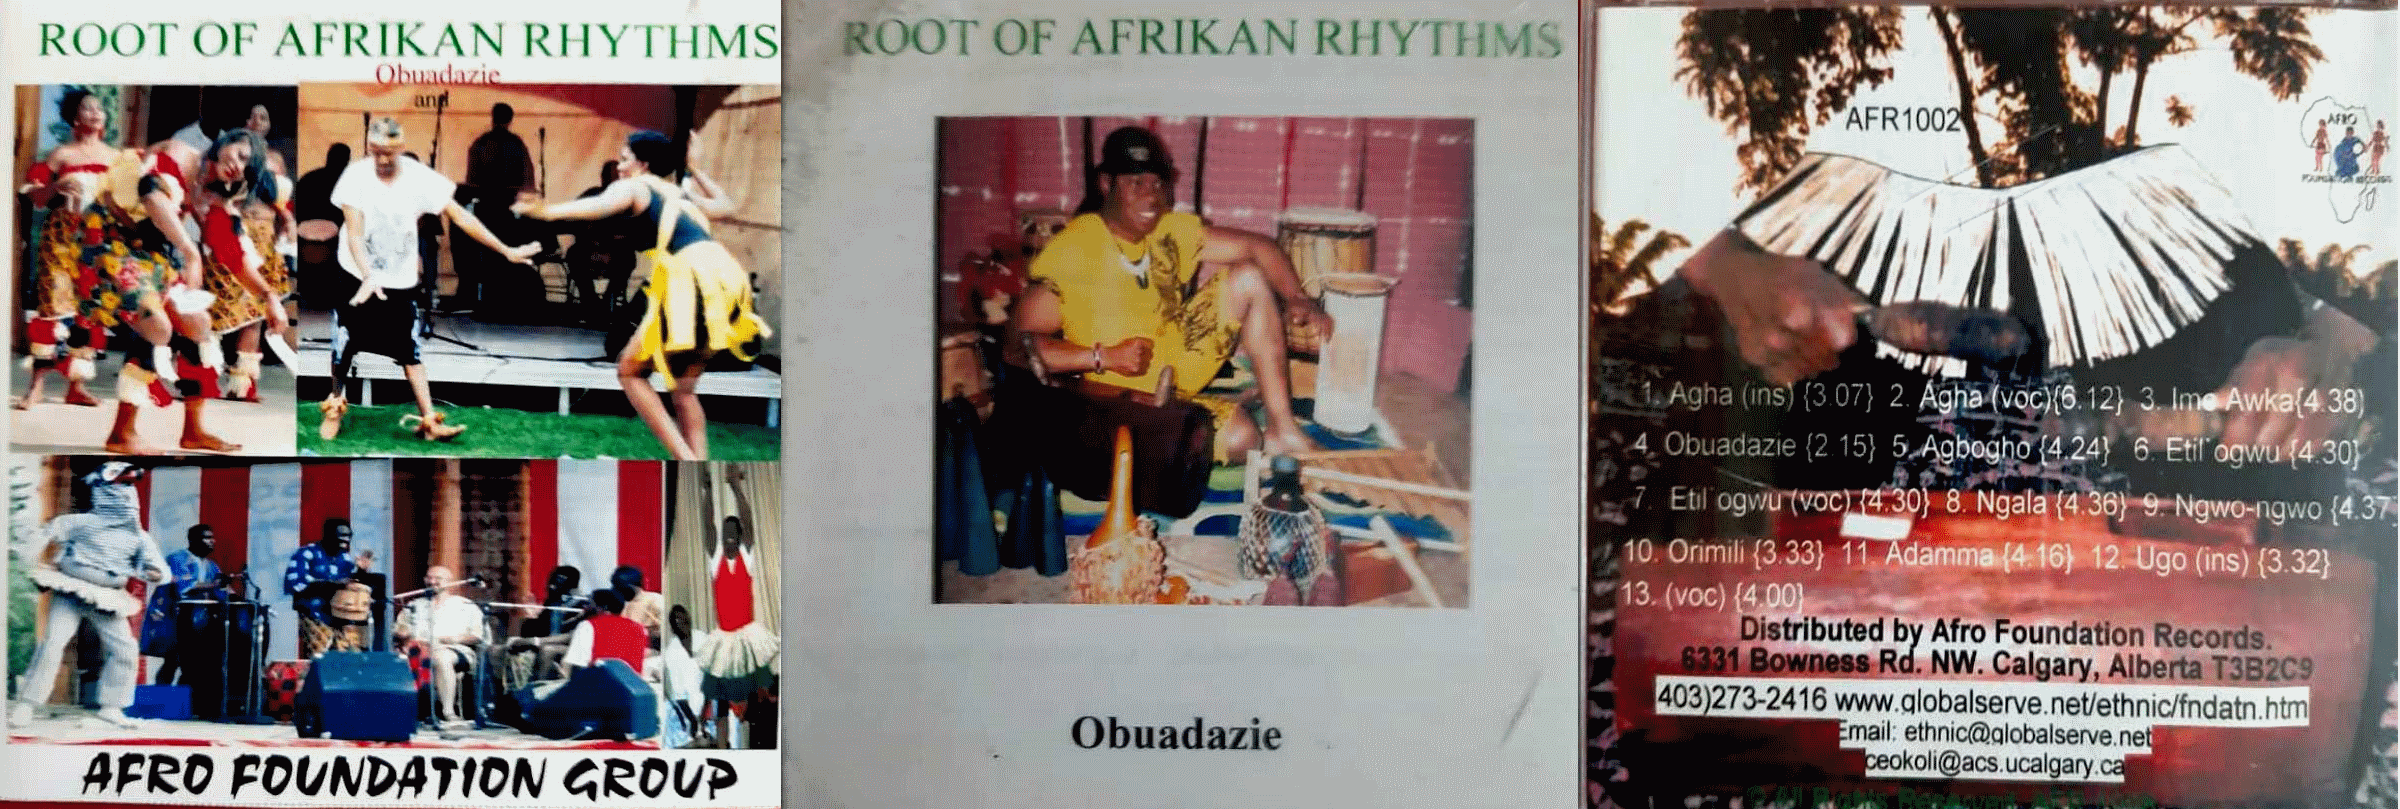 Roots Of Afrikan Rhythms - 3 photos